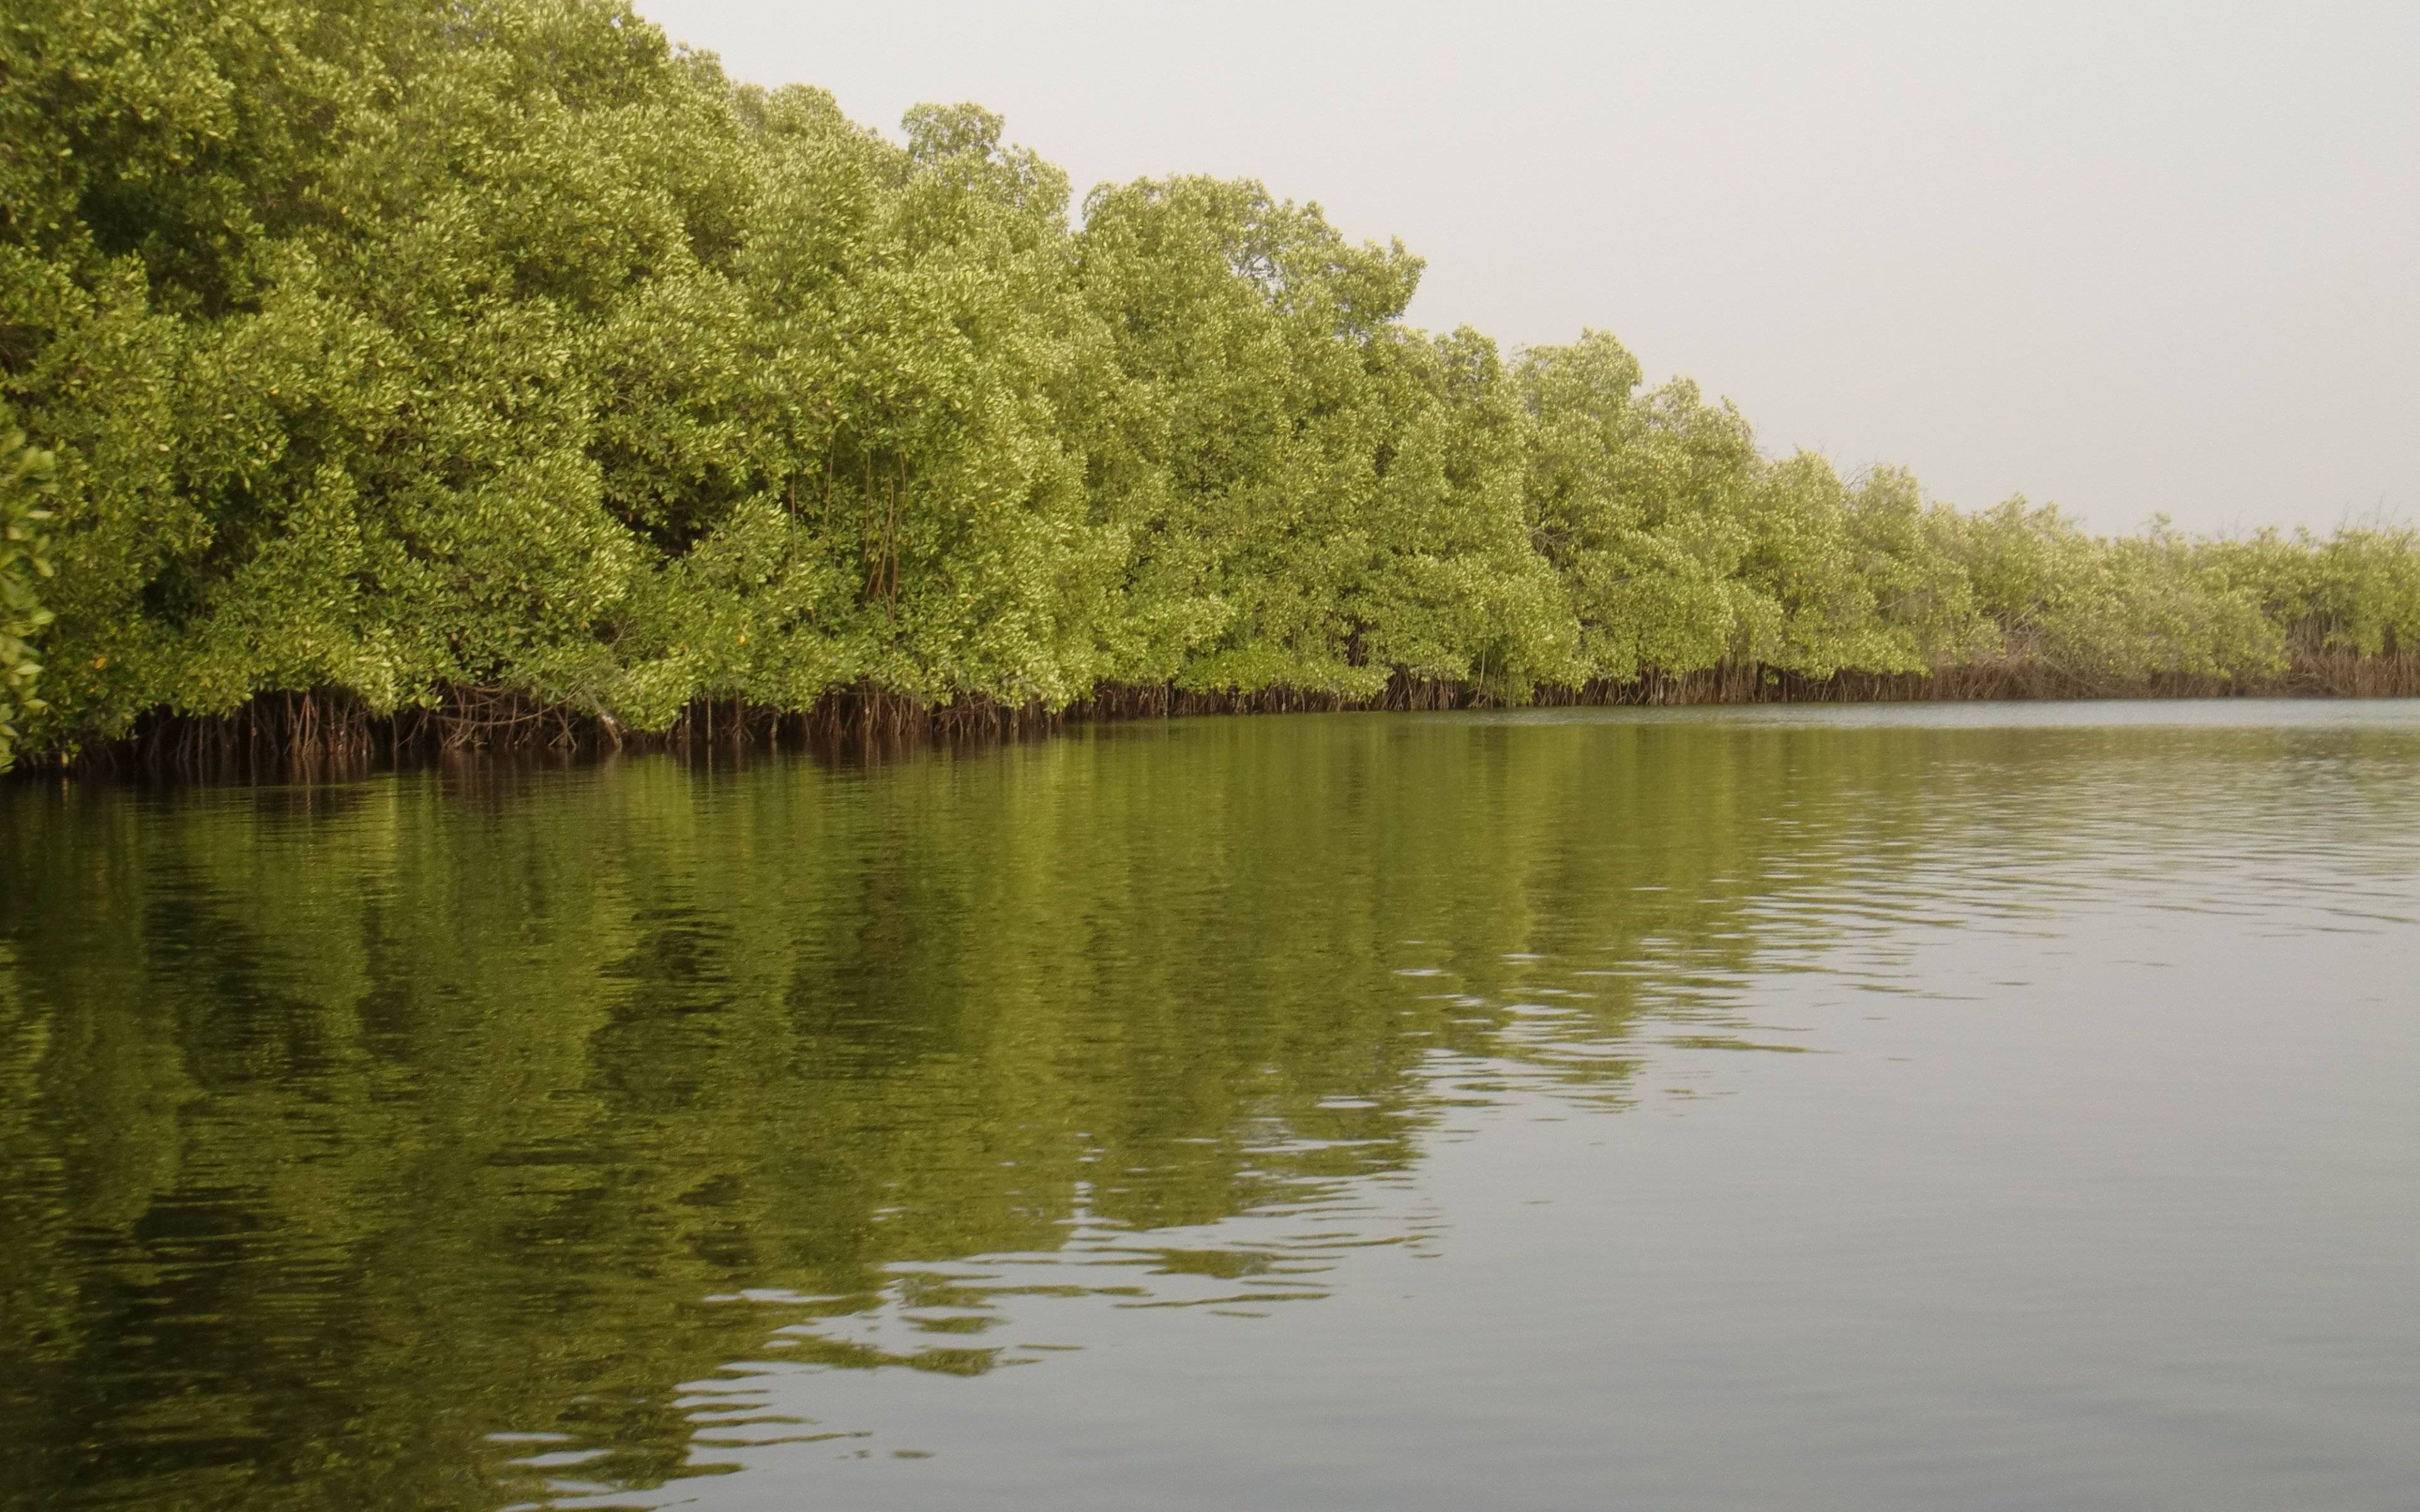  Touba y el Delta de Saloum - Excursión en canoa para admirar las aves